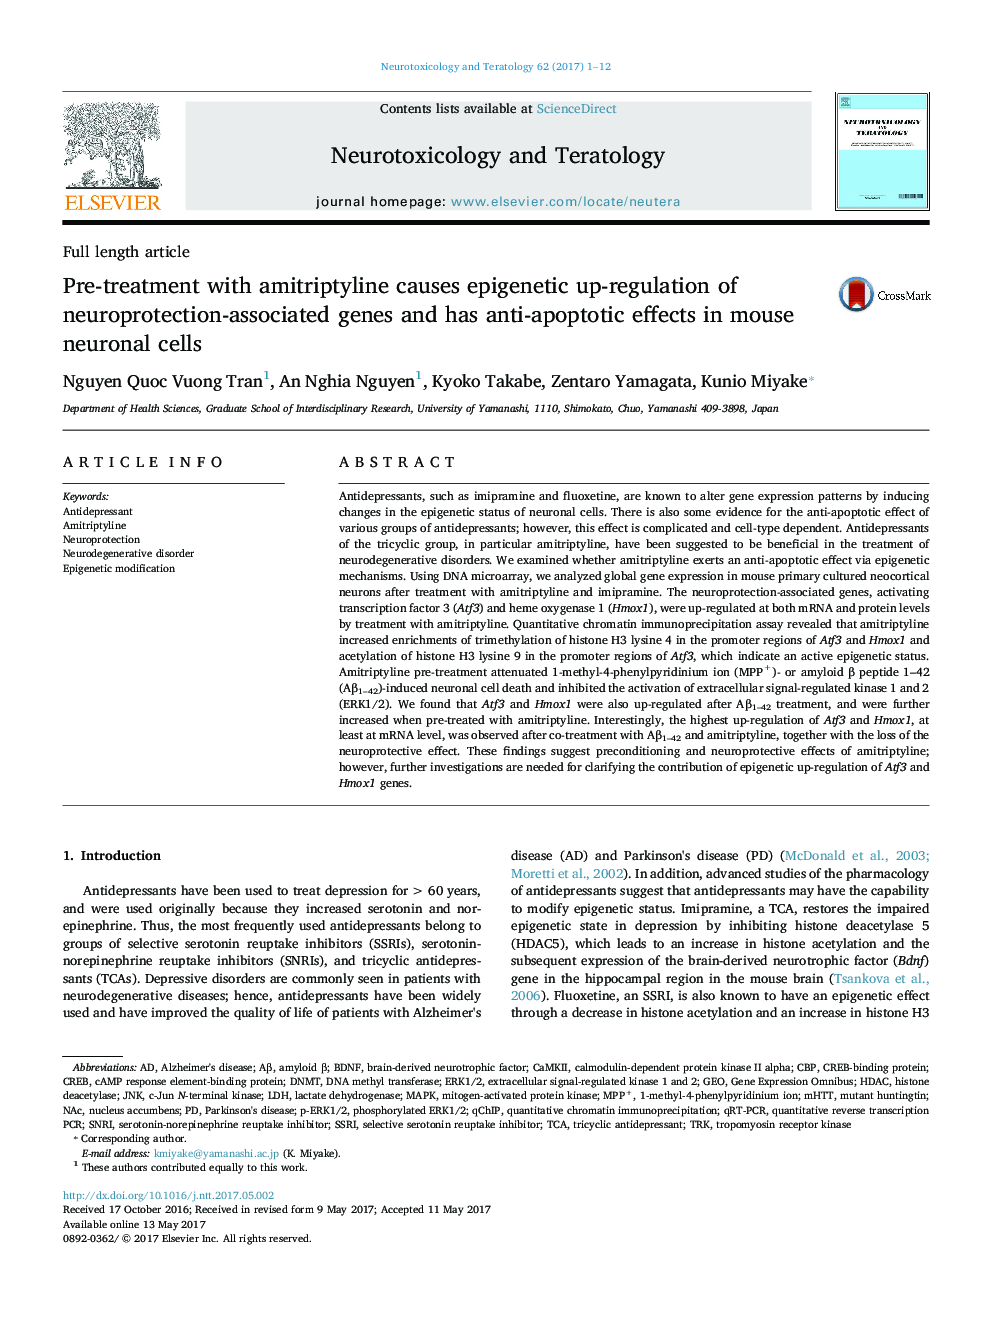 پیش درمان با آمیتریپتیلین باعث افزایش تنظیم اپی ژنتیک ژن های مرتبط با عصبی می شود و اثرات ضد آپوپتوزی در سلول های عصبی موش دارد 